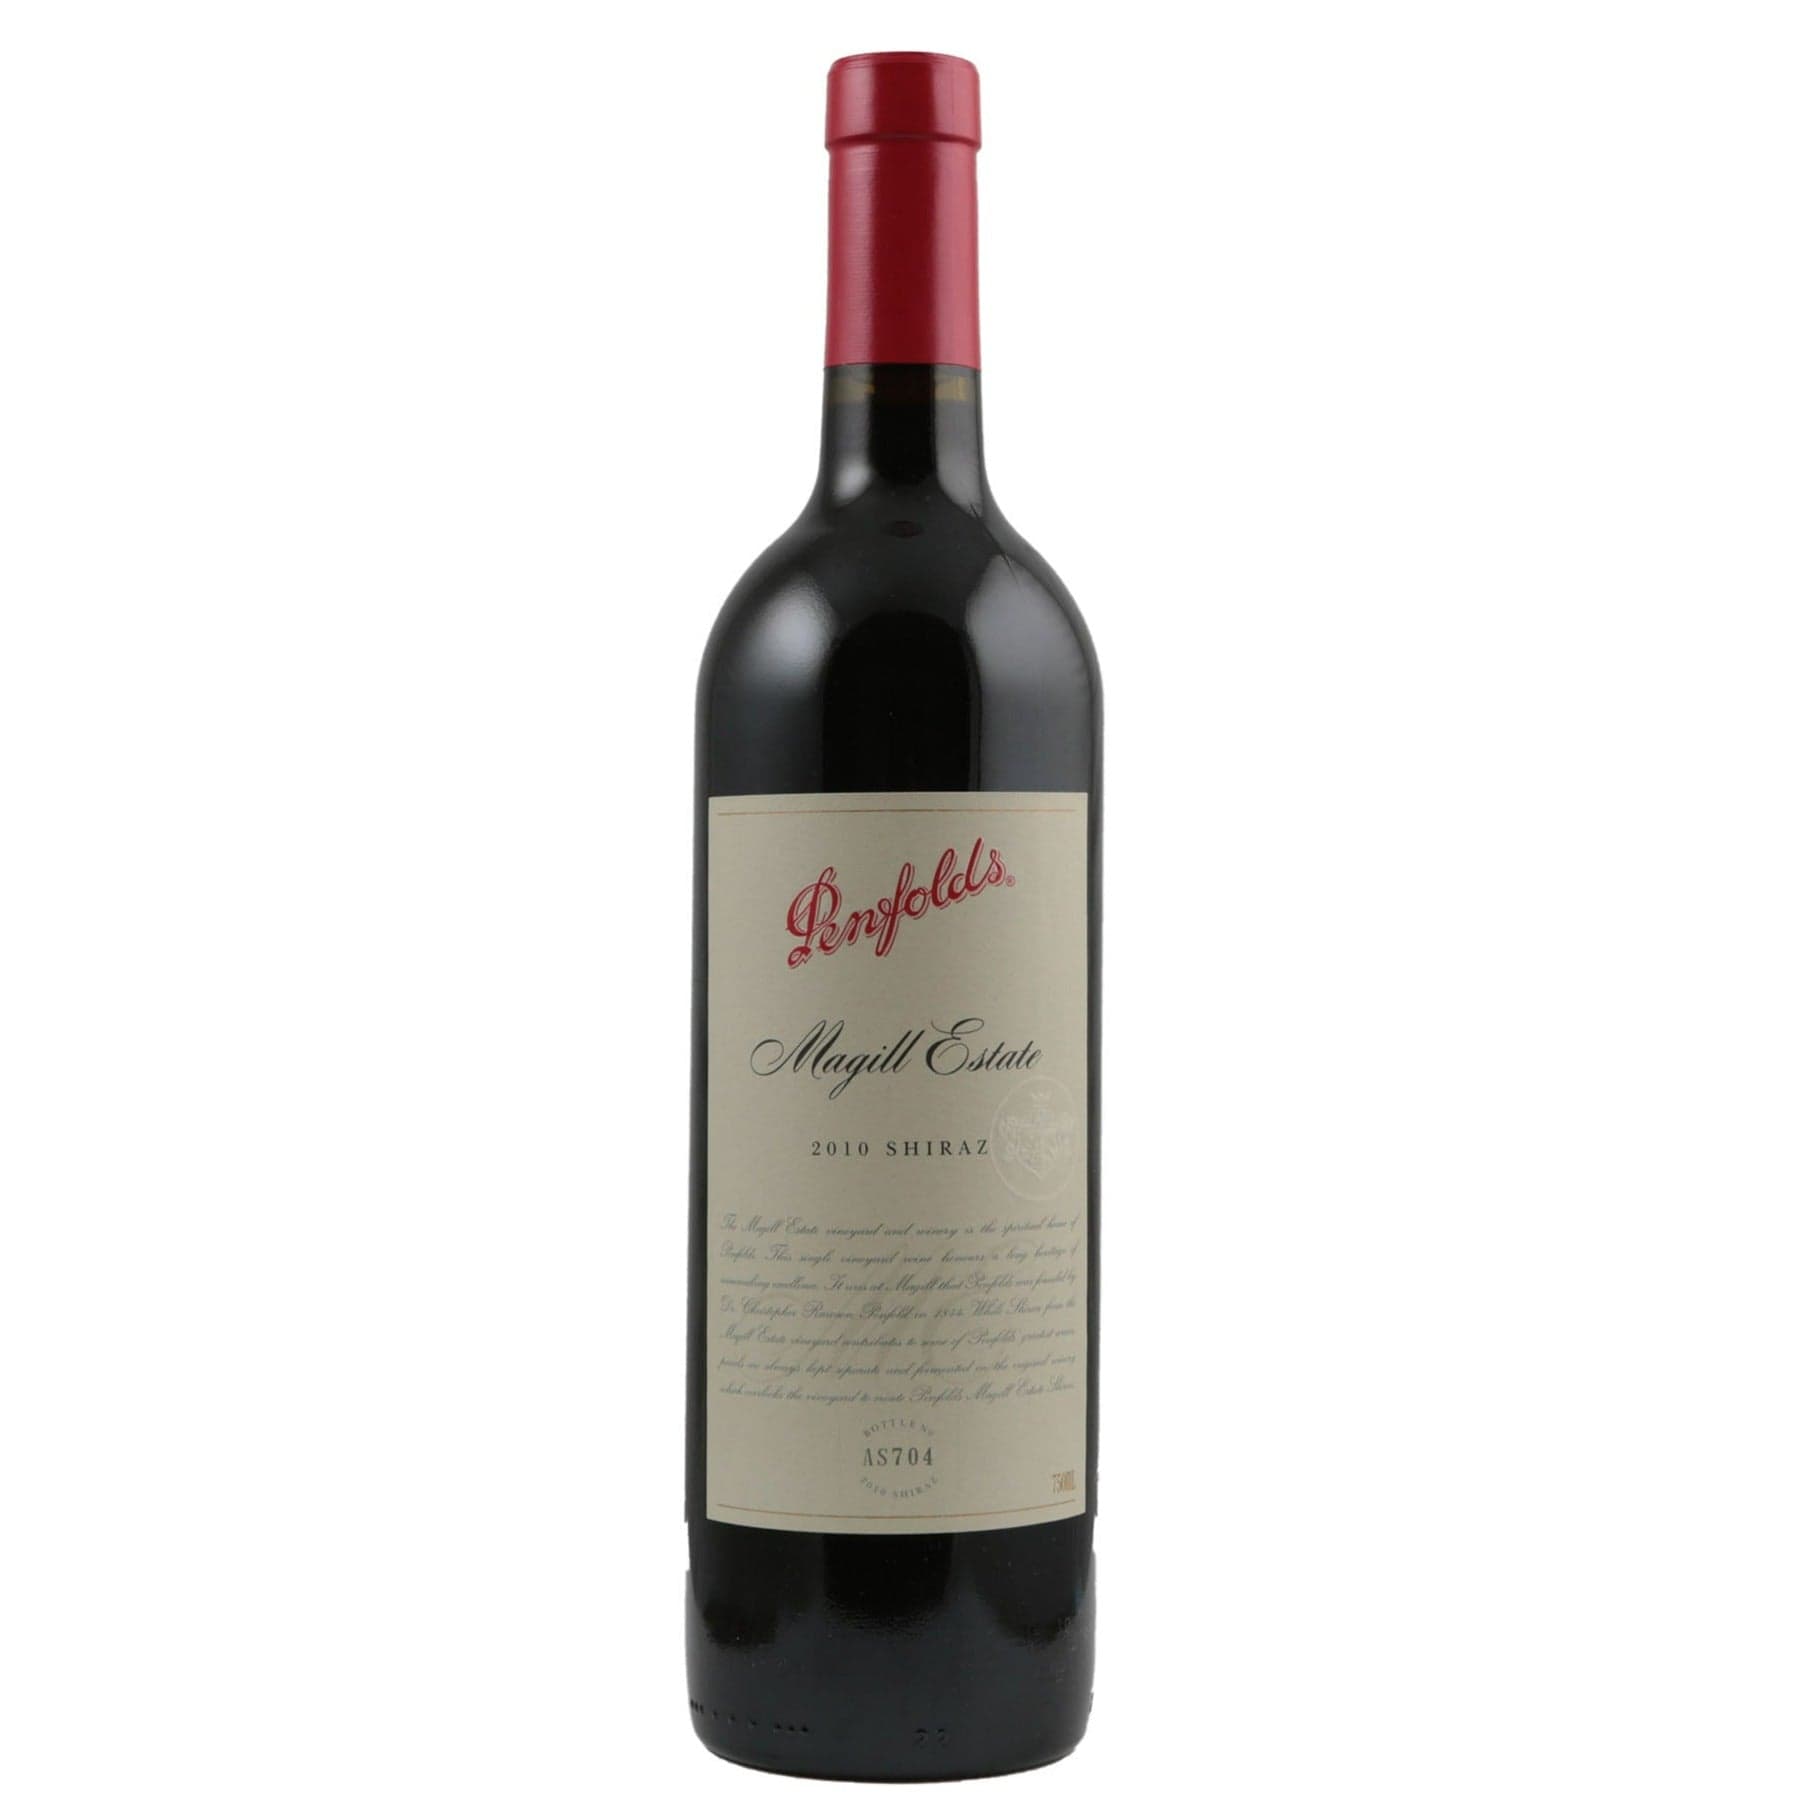 Single bottle of Red wine Penfolds, Magill Estate Shiraz Shiraz, South Australia, 2010 100% Shiraz